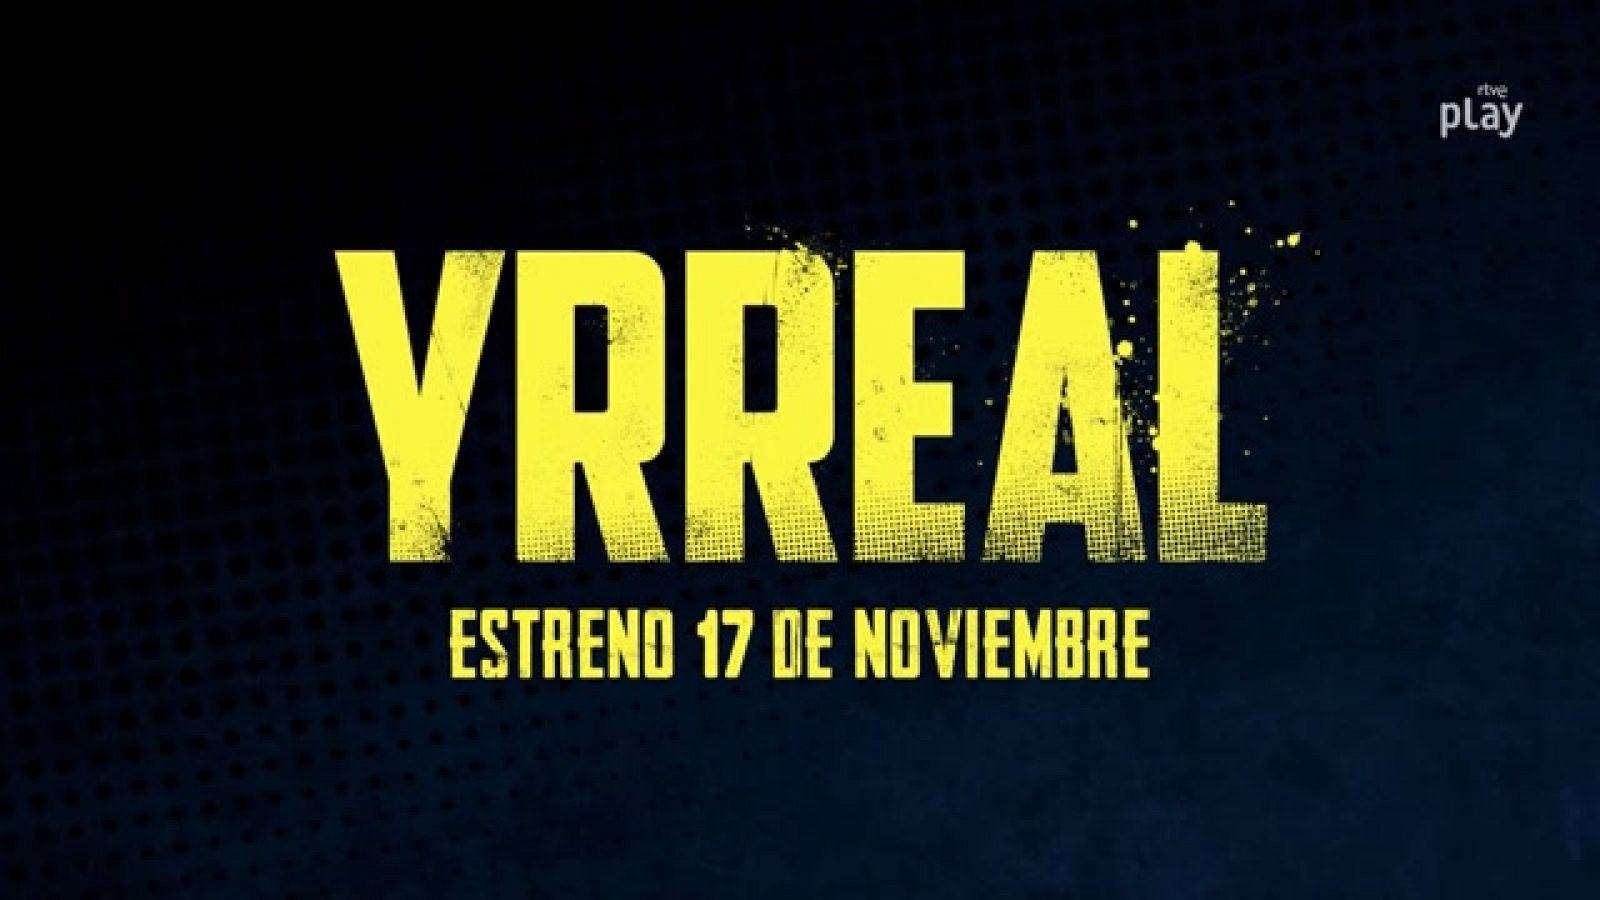 El 17 de noviembre llega 'Yrreal'